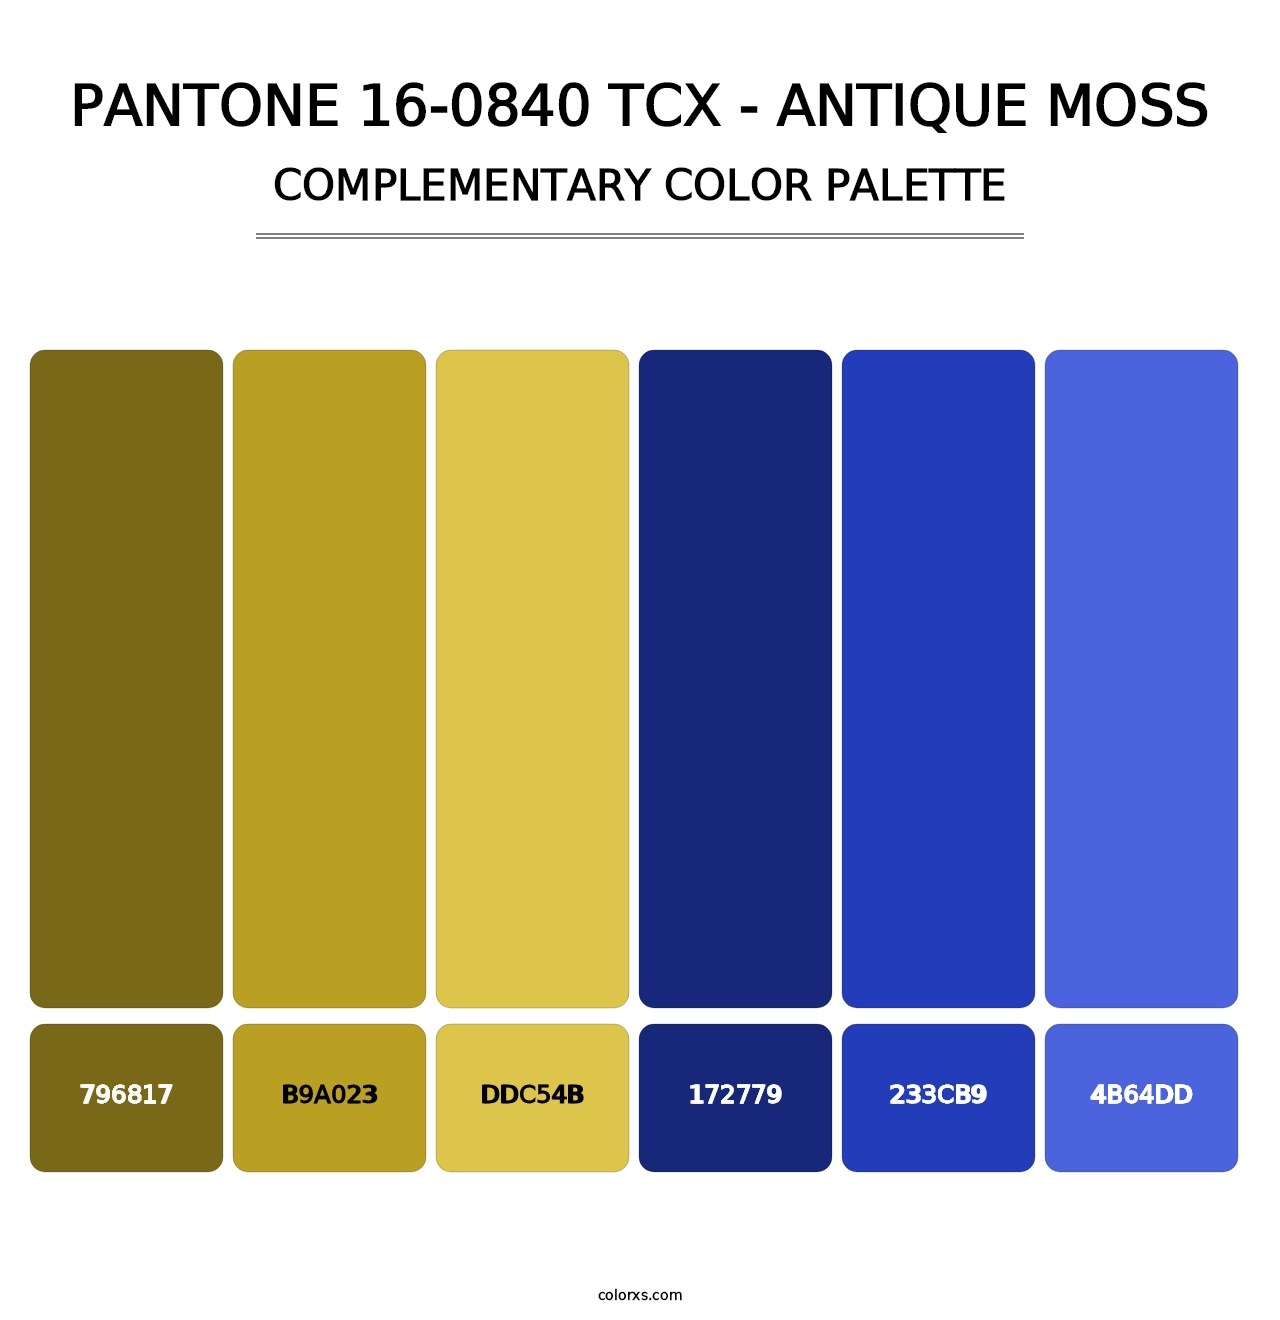 PANTONE 16-0840 TCX - Antique Moss - Complementary Color Palette